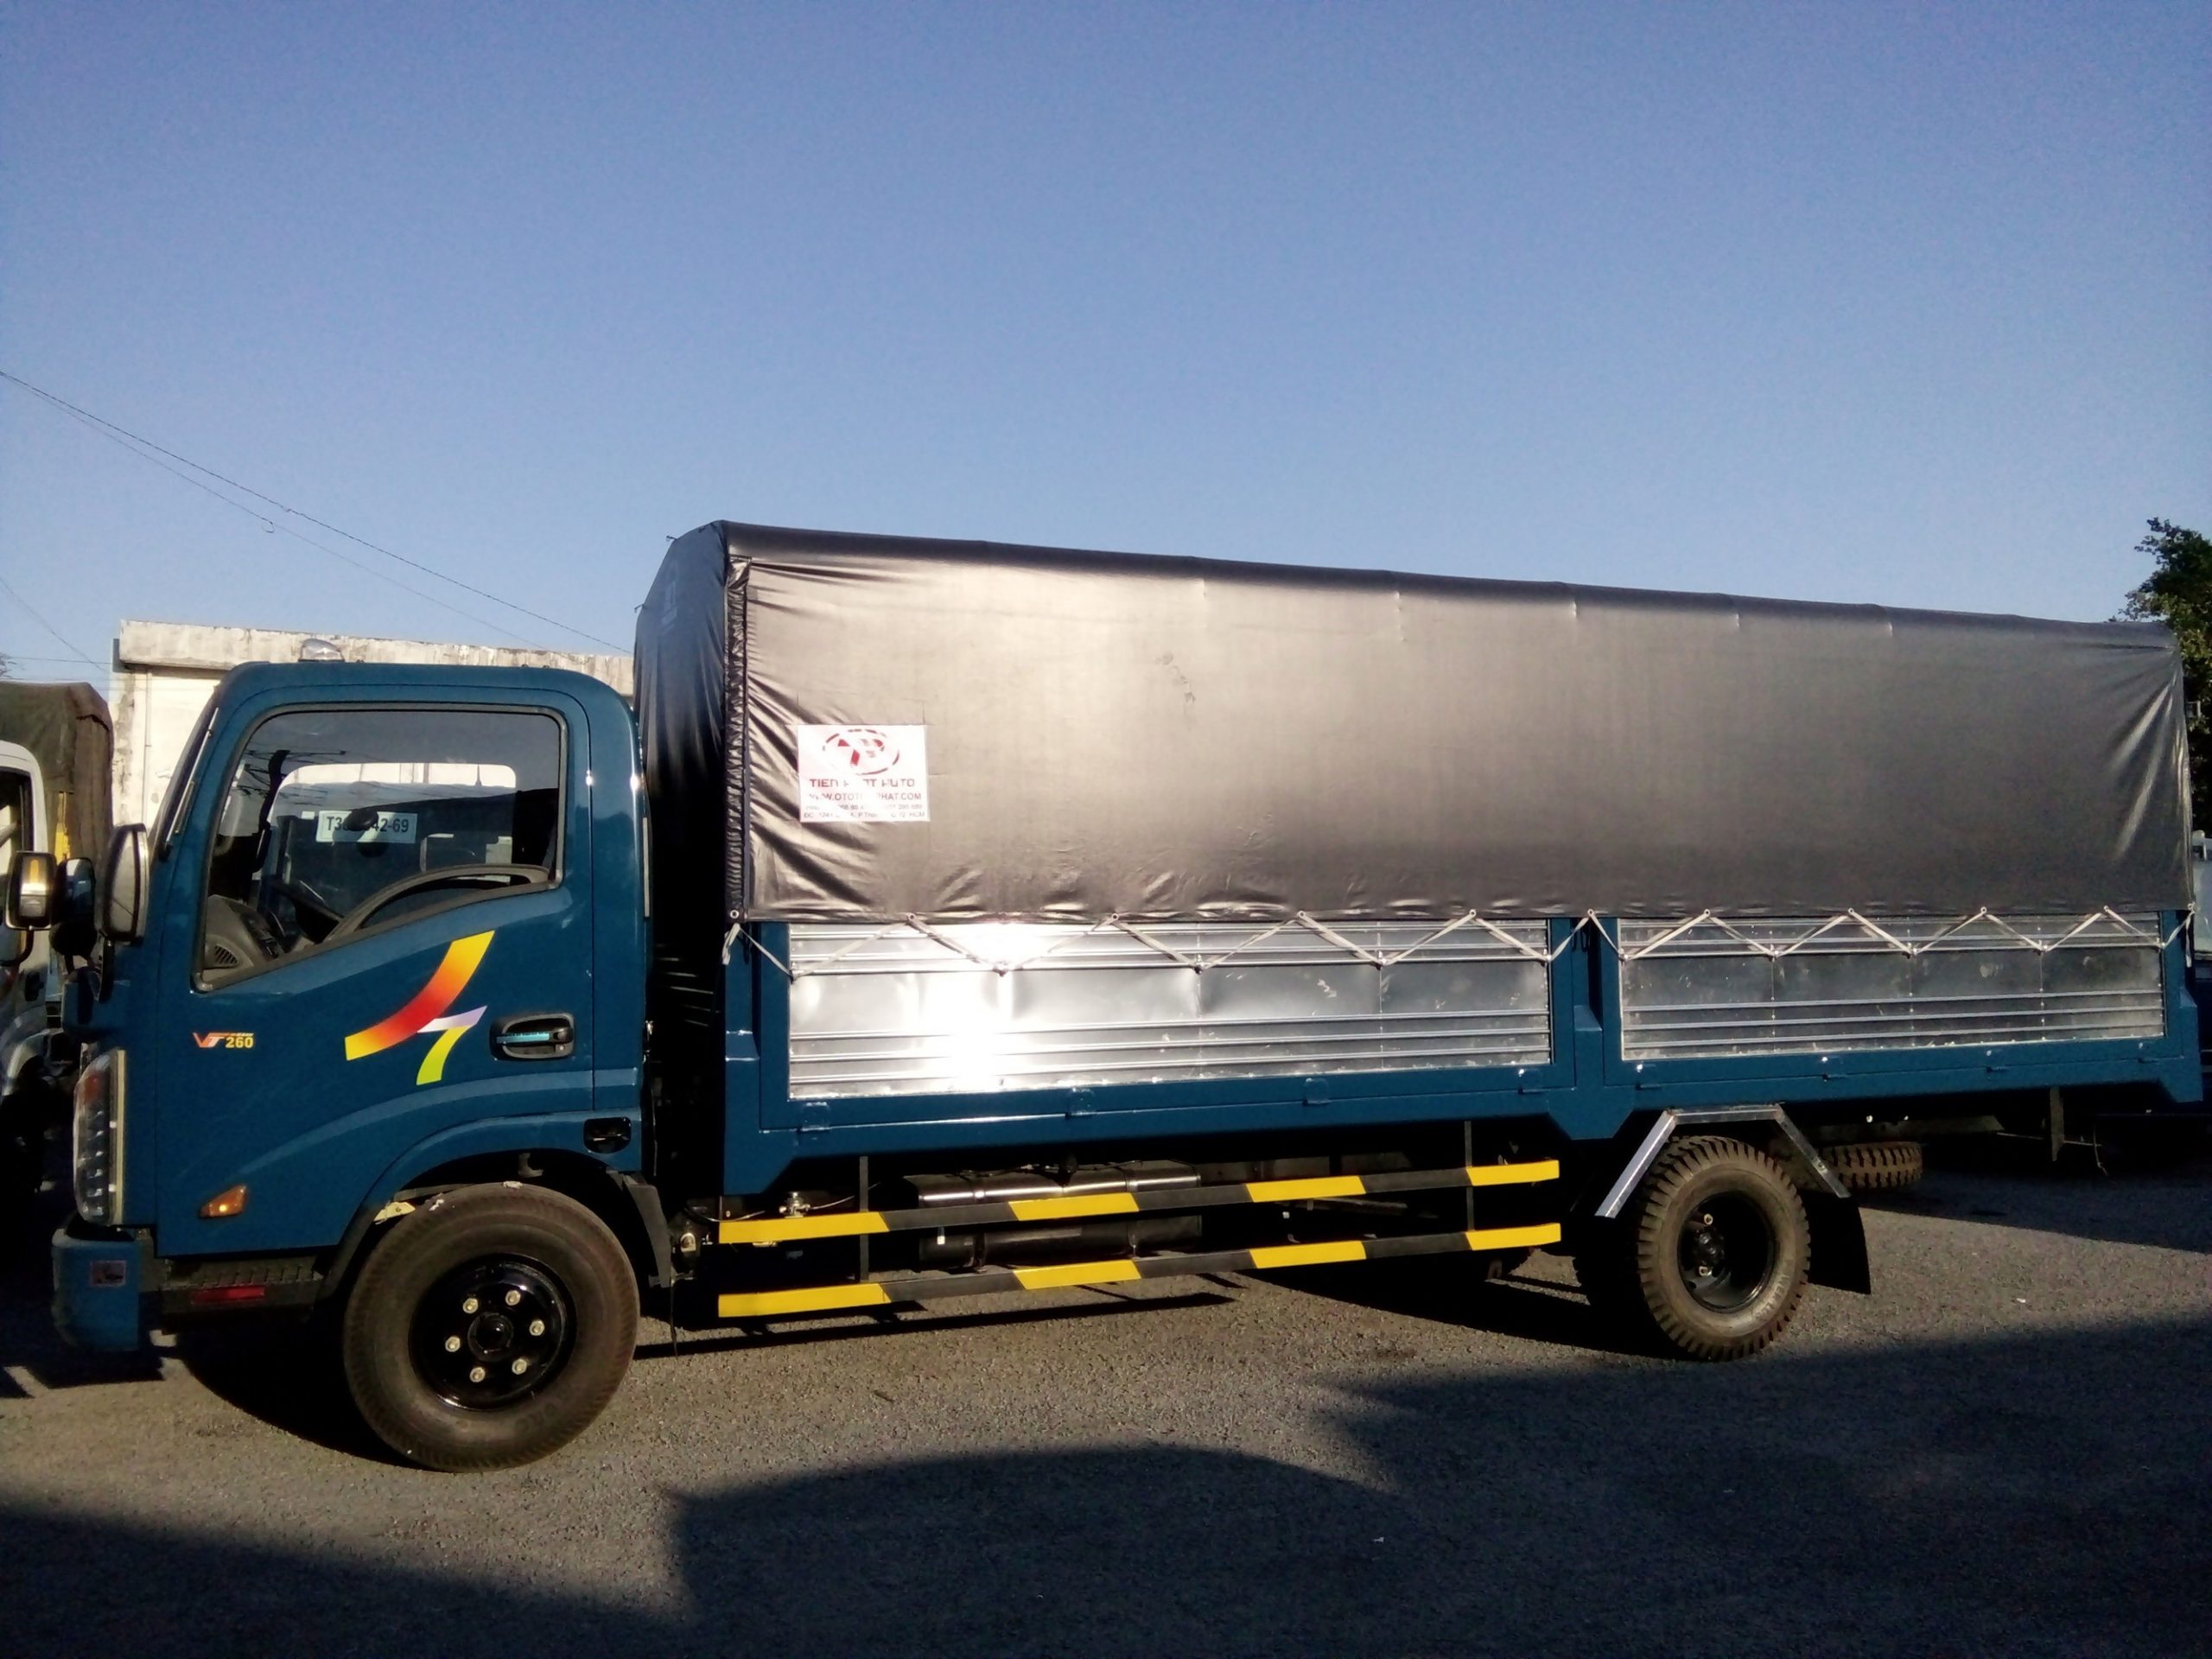 xe tải chở hàng thùng dài 6m